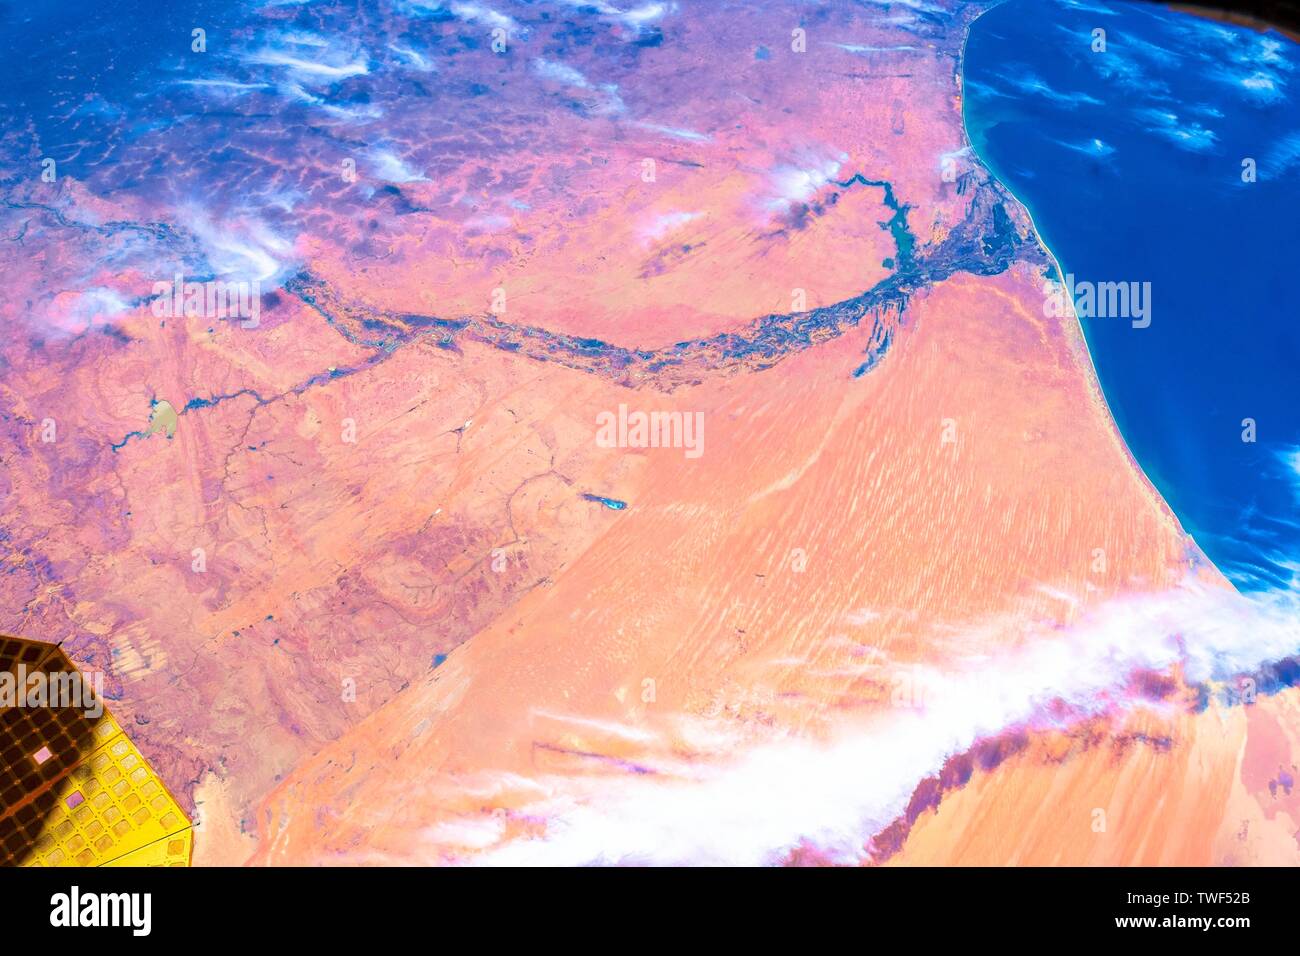 Plus de la Mauritanie. La beauté dans la nature de notre planète Terre vue de la Station spatiale internationale (ISS). L'image est un domaine public de l'élève par NAS Banque D'Images